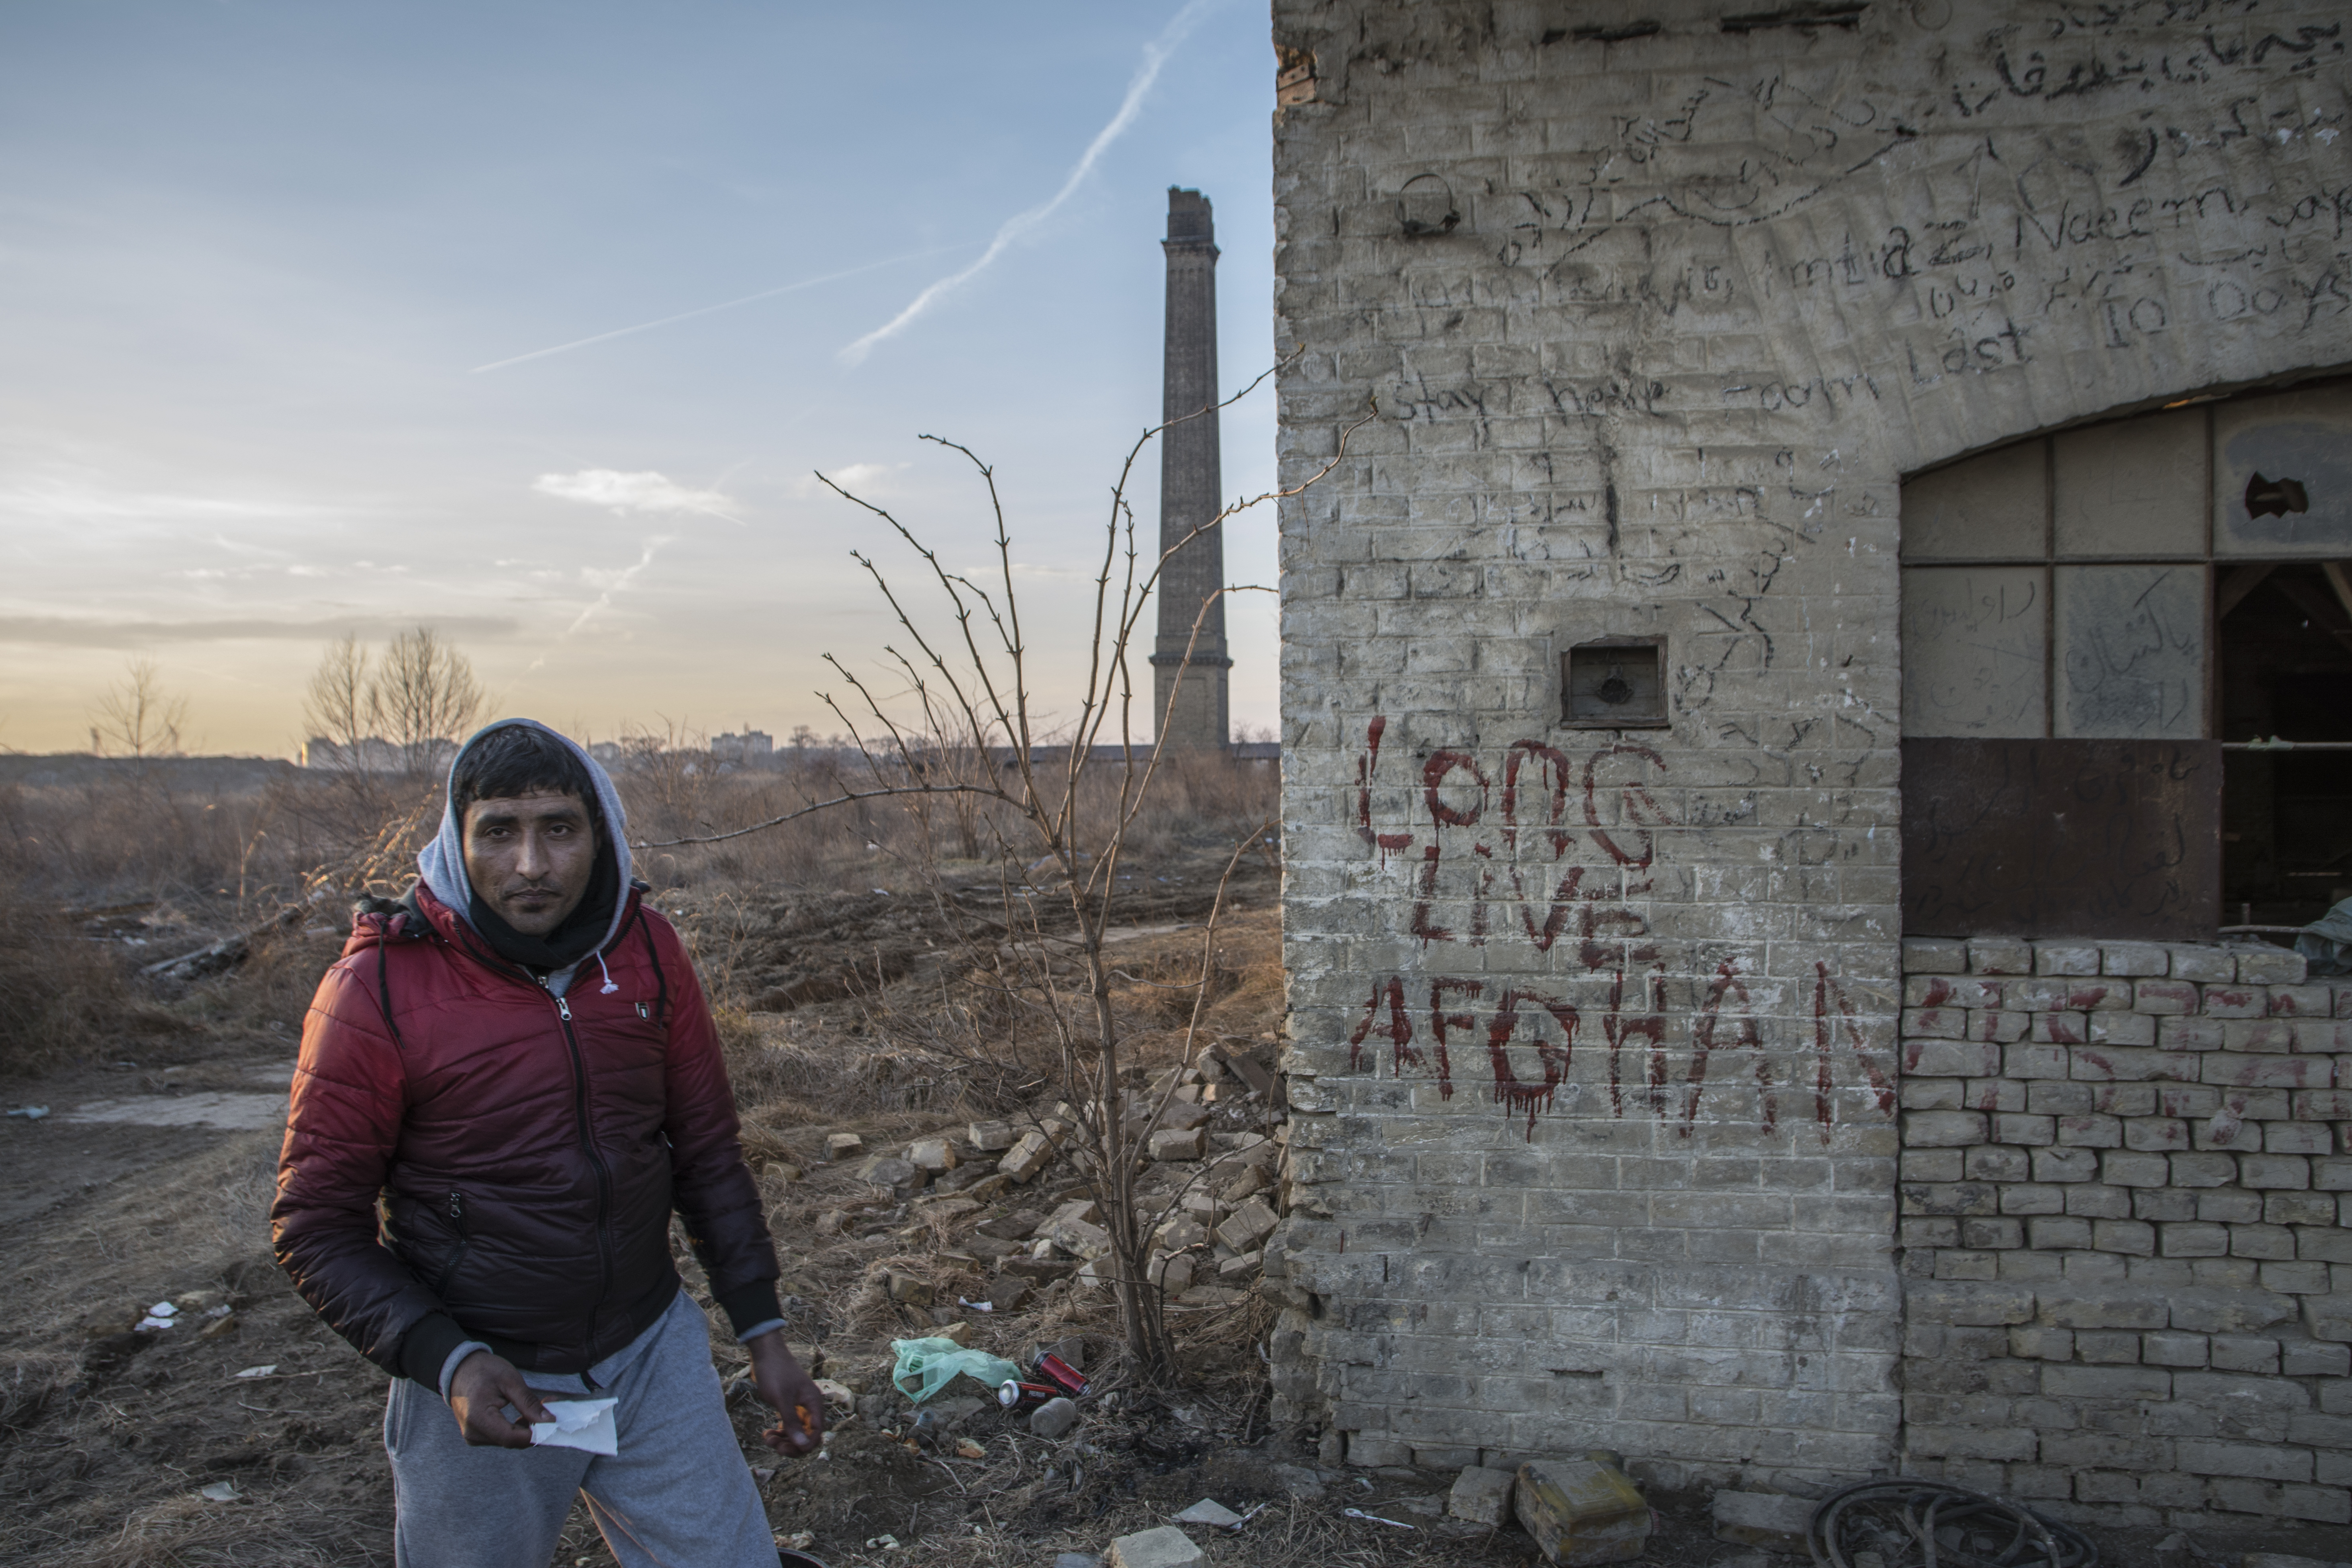 Alla ex fabbrica di mattoni di Subotica, sul muro la scritta "lunga vita all'Afghanistan"(foto di Marco Marchese)